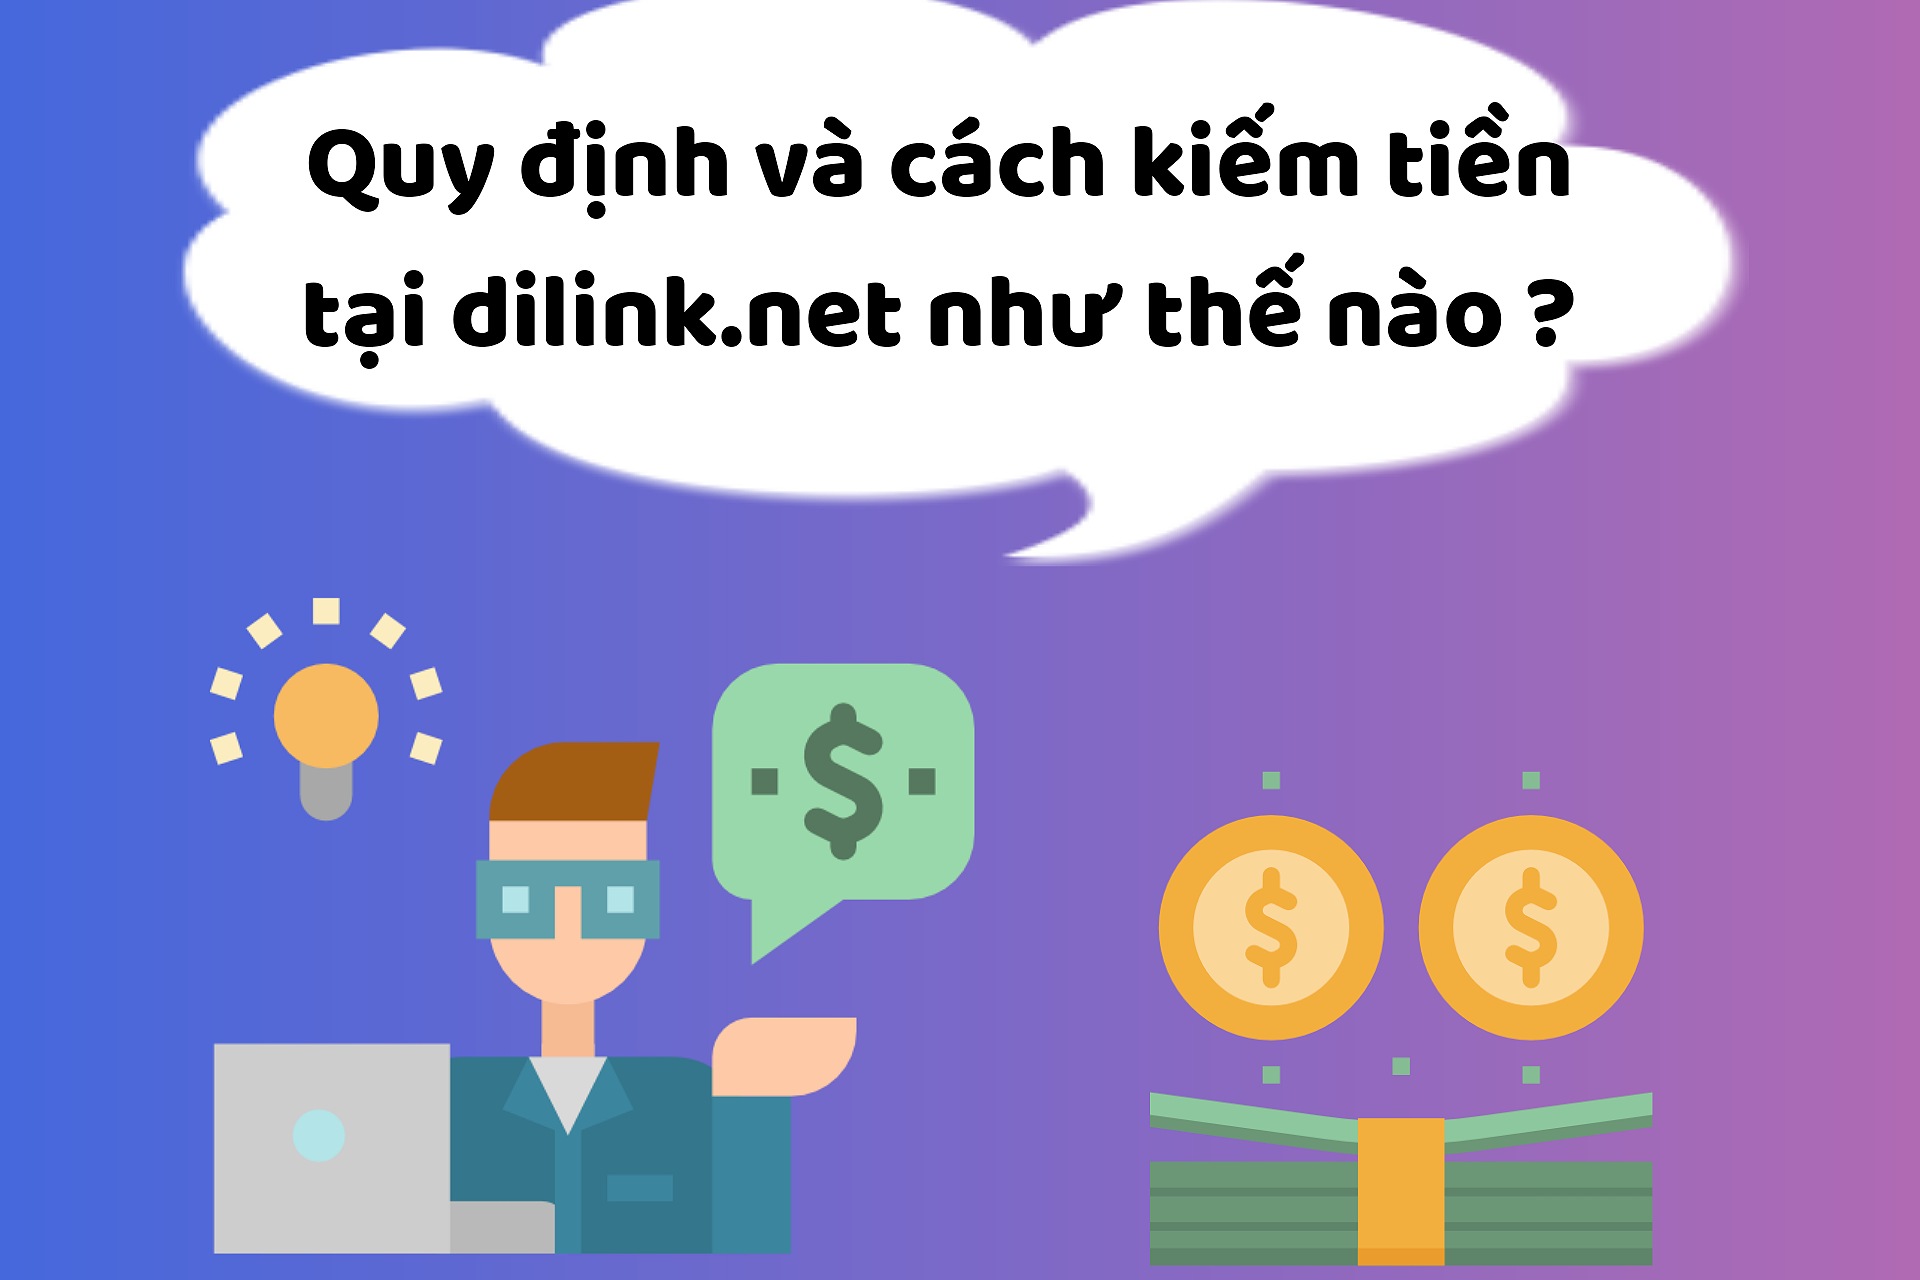 Quy định kiếm tiền và giải đáp câu hỏi tại dilink.net